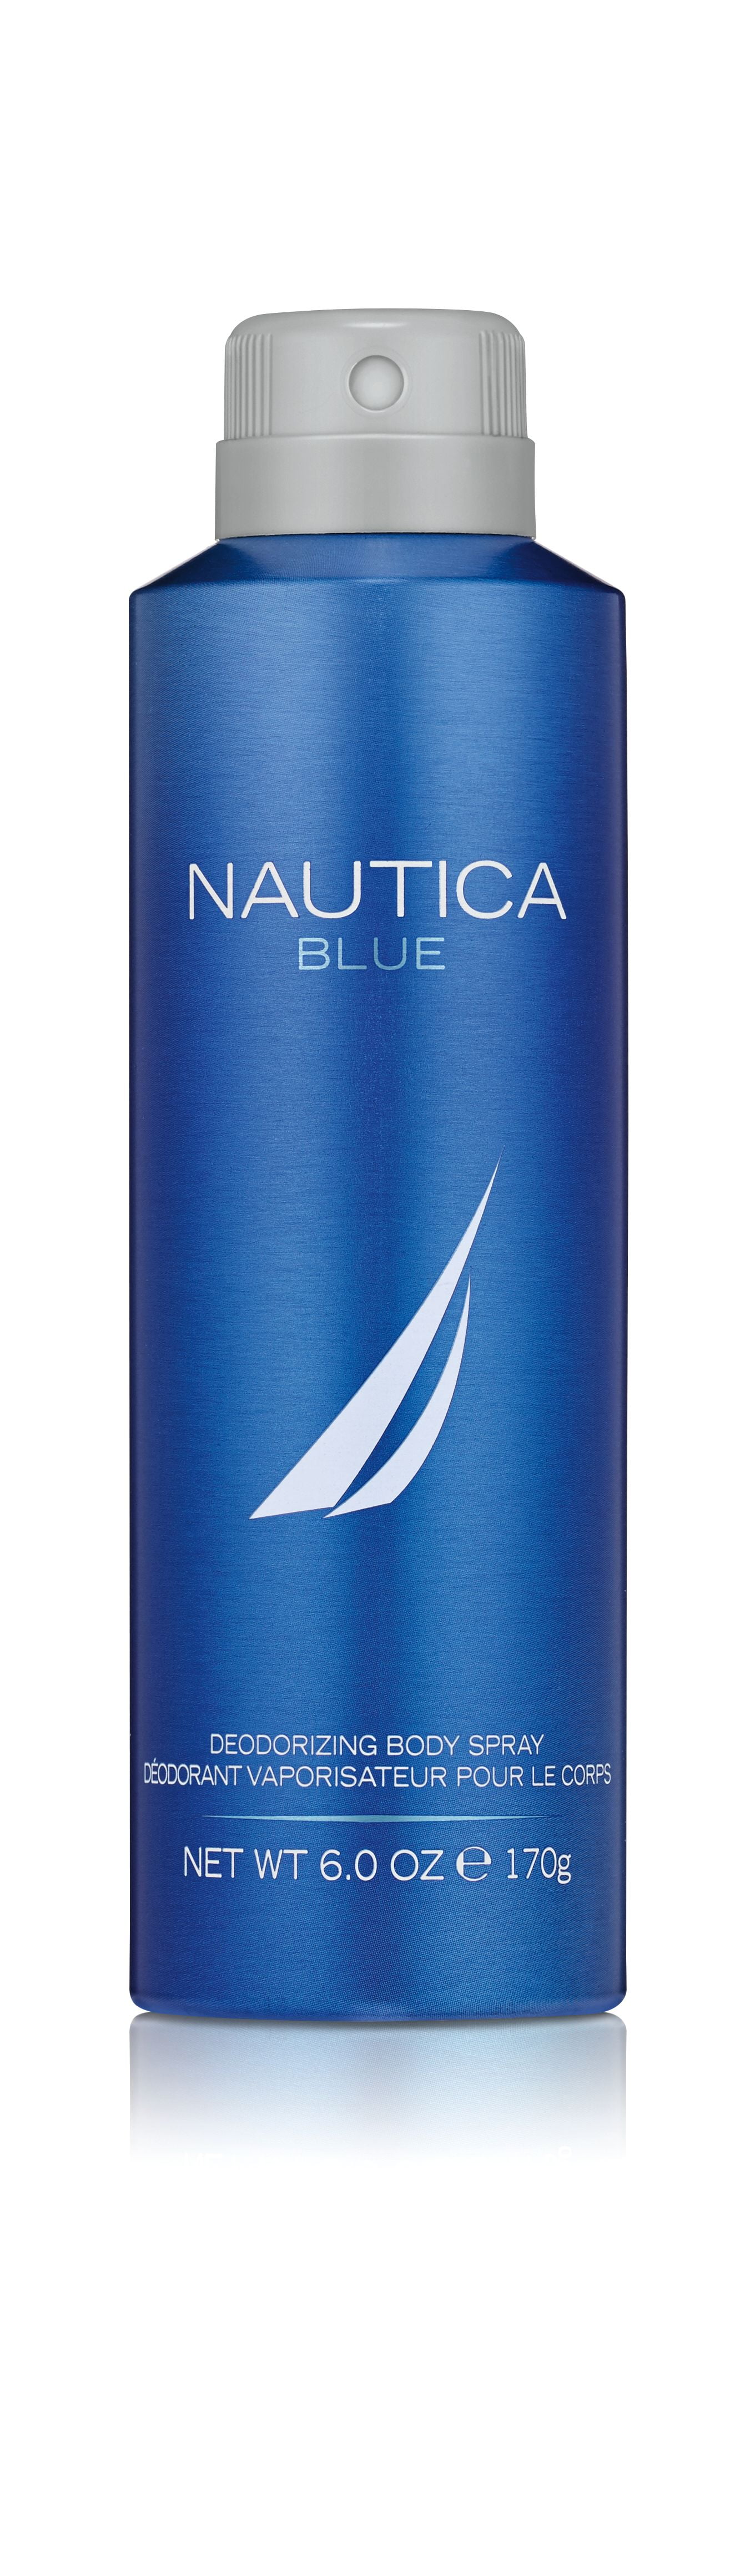 Nautica Blue Body Spray for Men, 6 fl oz